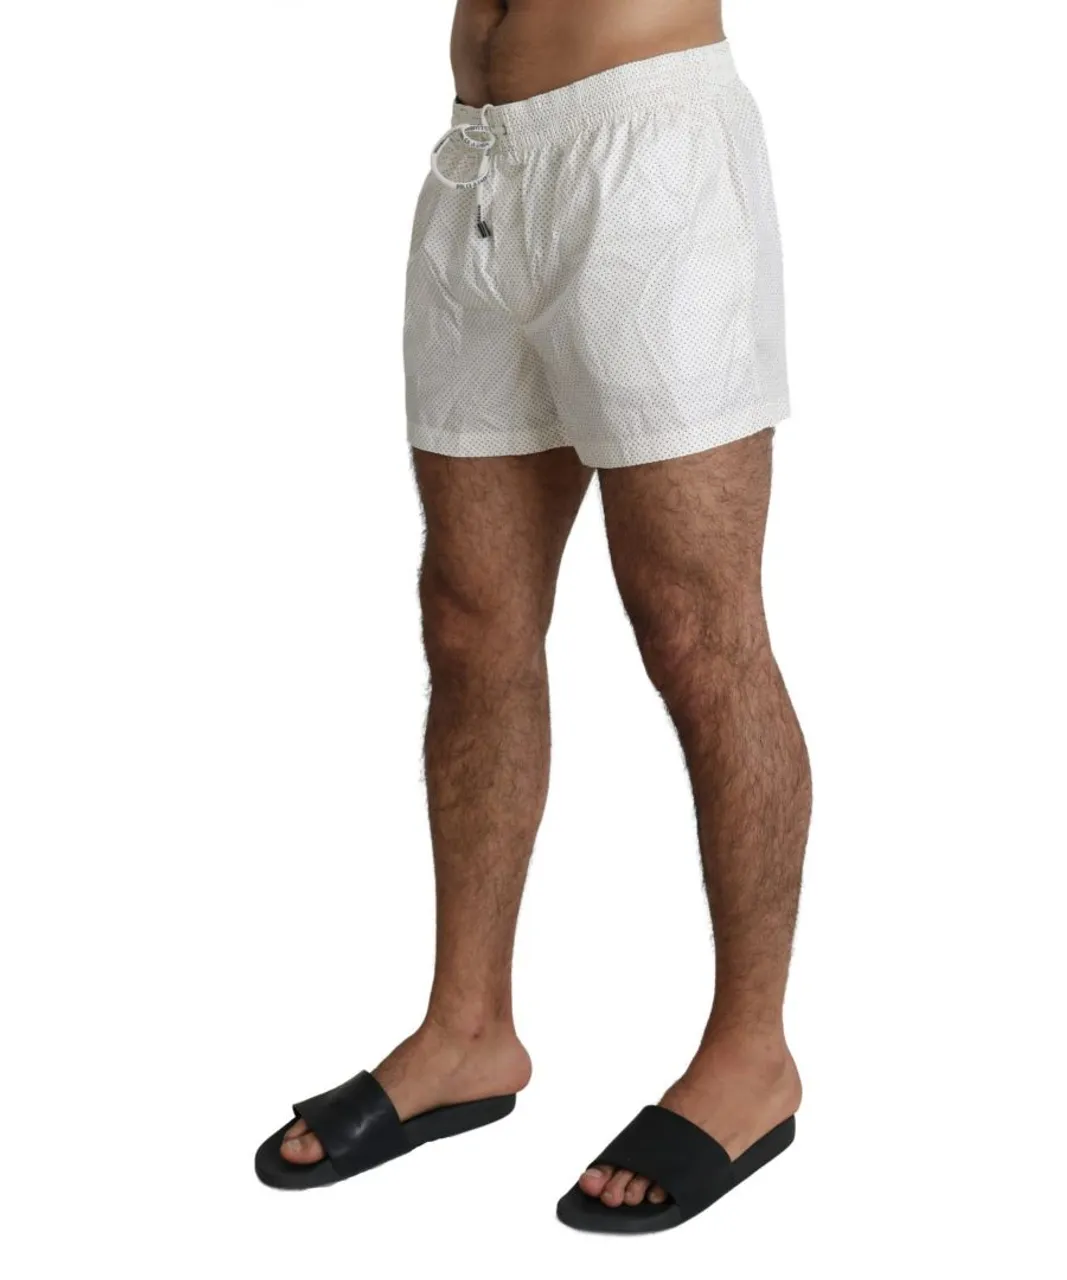 Dolce & Gabbana White Polka Beachwear Shorts Mens Swimshorts